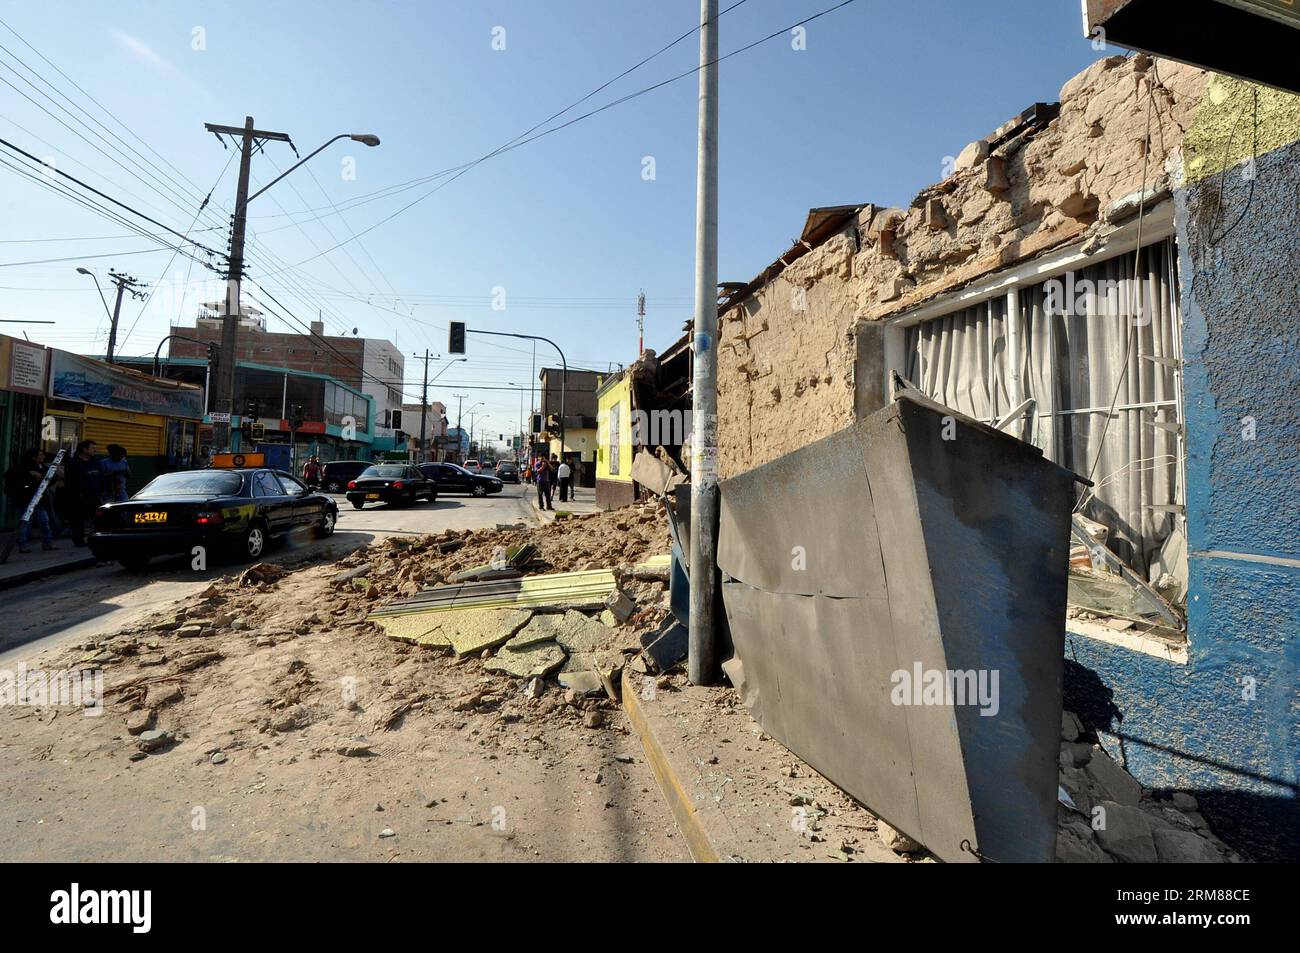 (140402) -- ARICA, 2. April 2014 (Xinhua) -- Anwohner laufen nach einem Erdbeben am Dienstagabend in Arica, Chile, am 2. April 2014 vor einem verdammten Haus. Ein Erdbeben der Stärke 8,2 traf am Dienstag vor der Nordküste Chiles und hinterließ fünf Tote und drei Schwerverletzte, während Tausende von Menschen aufgrund eines Tsunamialarms evakuiert wurden. (Xinhua/Agencia UNO) (jg) (sp) CHILE-ARICA-UMWELT-ERDBEBEN PUBLICATIONxNOTxINxCHN Arica 2. April 2014 XINHUA-Bewohner gehen vor einem Haus nach dem Erdbeben AM Dienstag DER Nacht in Arica Chile AM 2. April 2014 auf 8 2 Magnitude Ohr Stockfoto